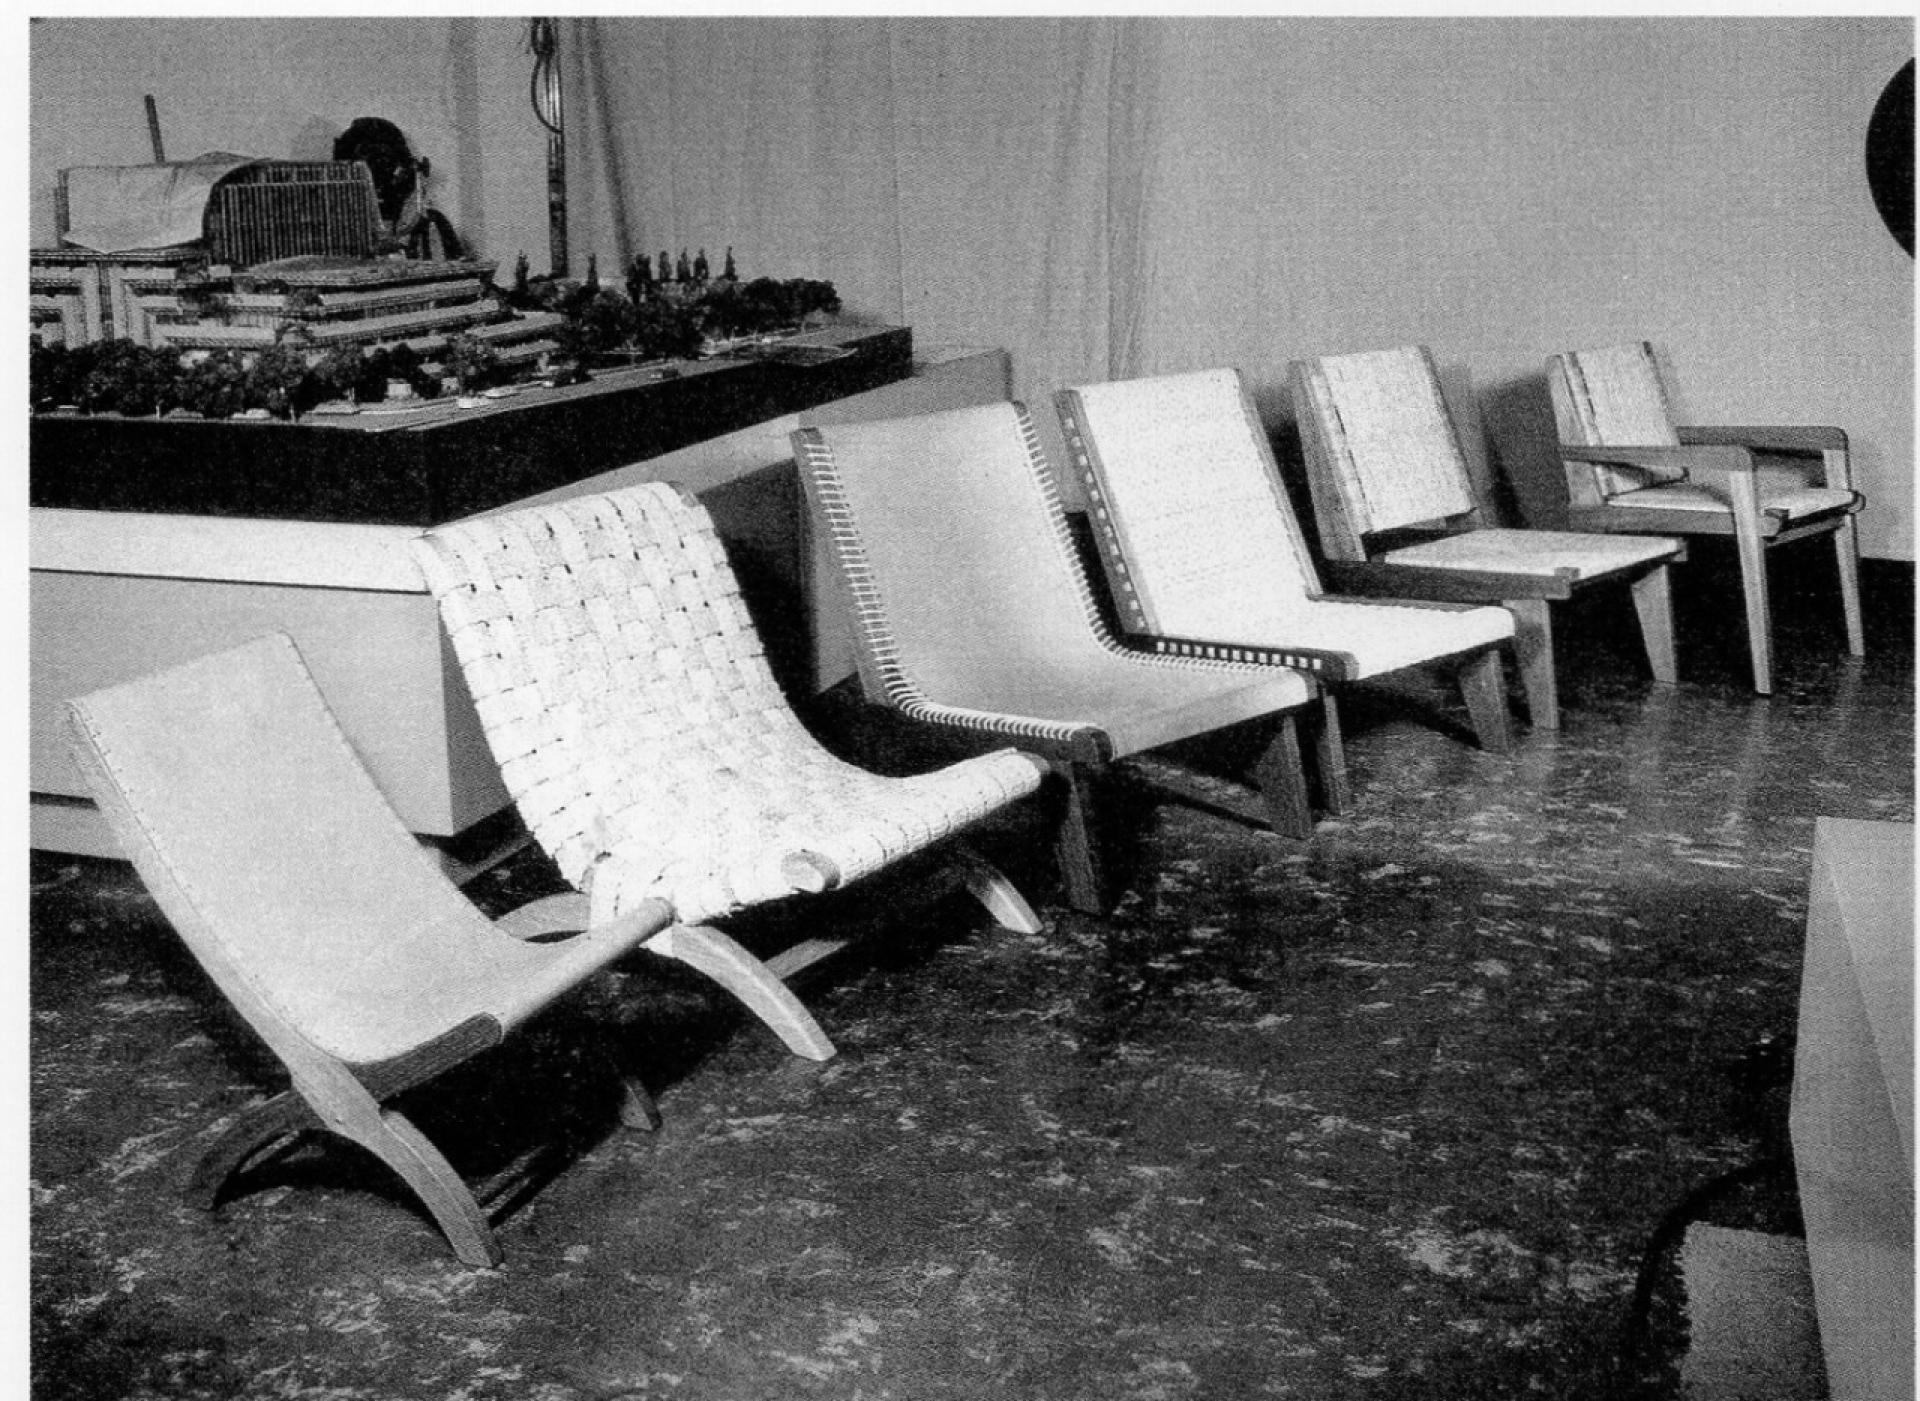 Clara Porset’s chairs in the Julius Shulman studio in California, 1952. | Photo via Salinas, Oscar. Una vida inquieta, una obra sin igual, UNAM, México, 2001